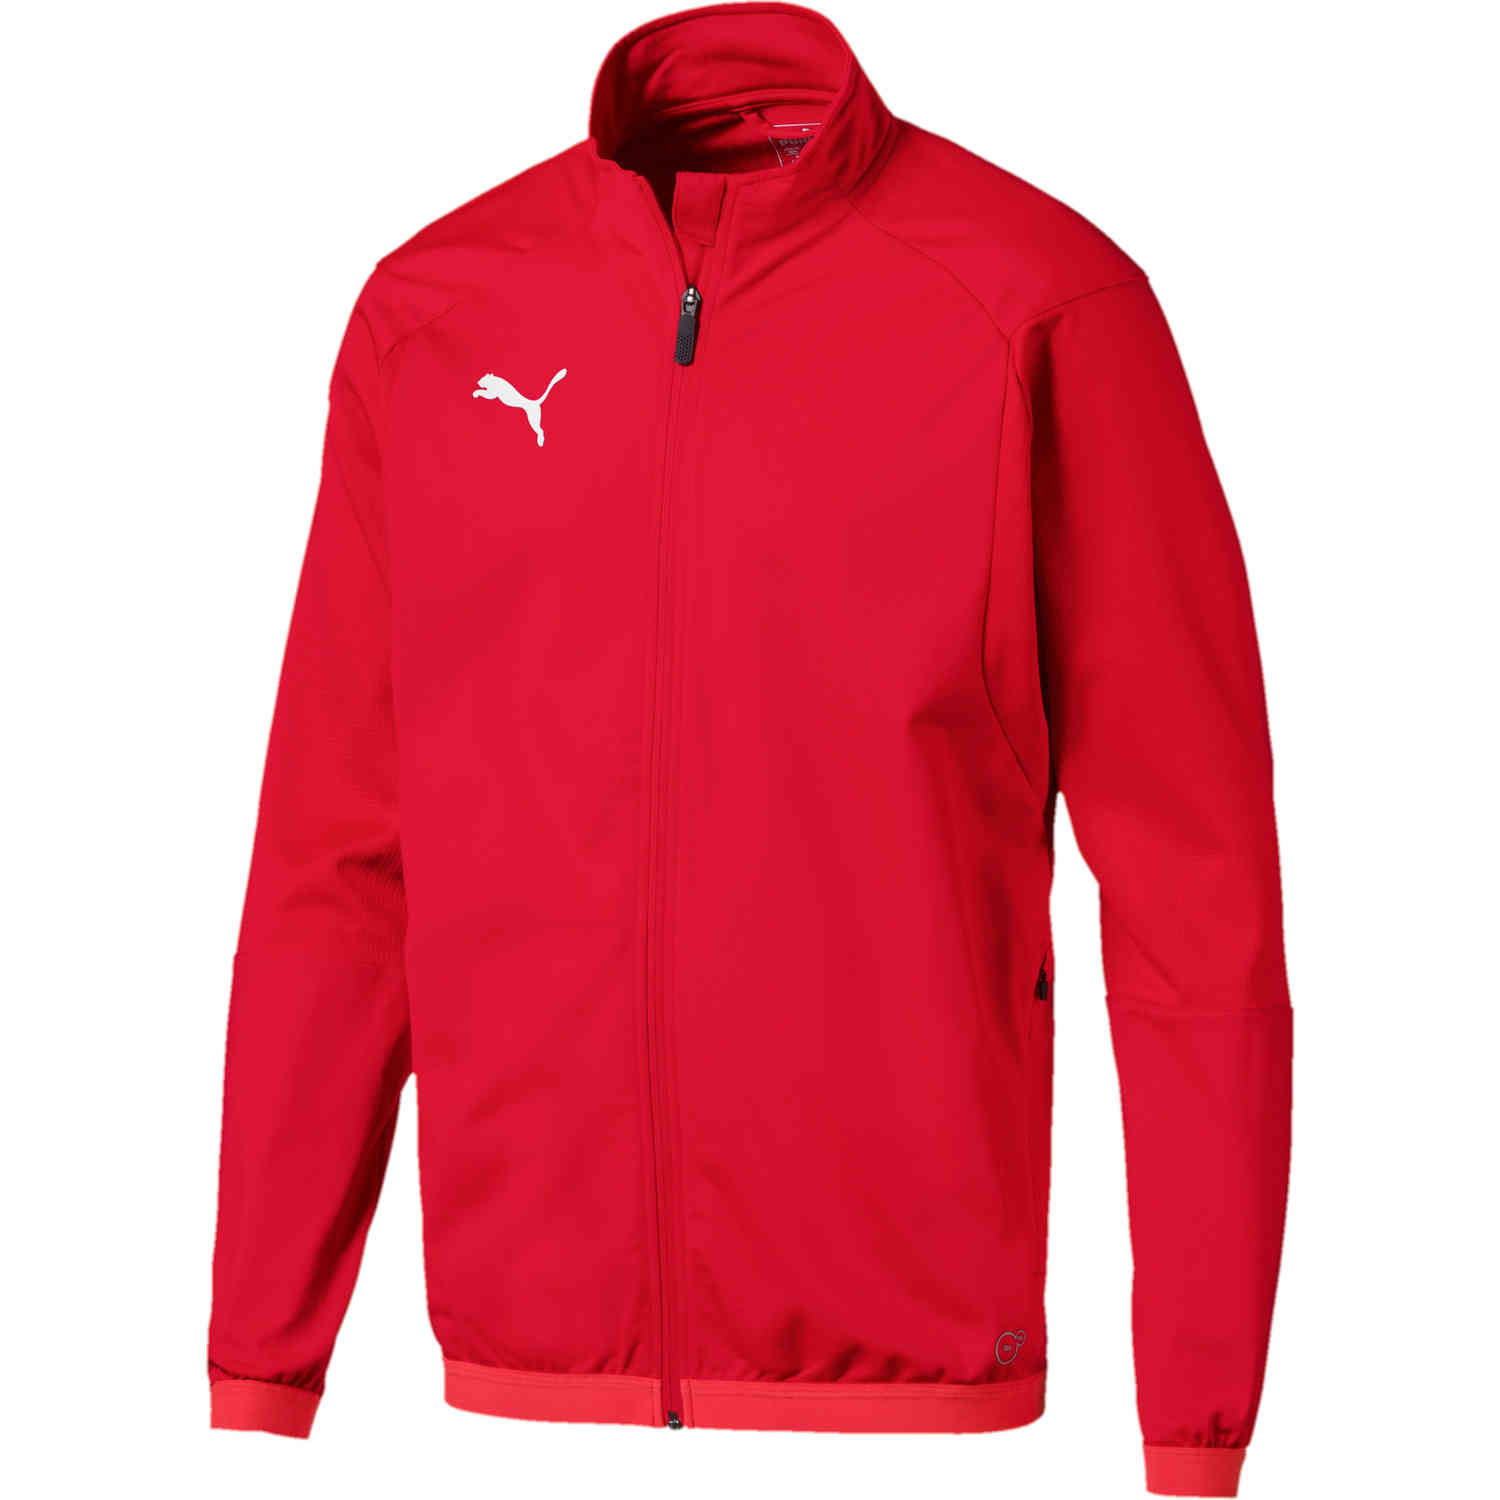 Puma Liga Training Jacket - Red - SoccerPro